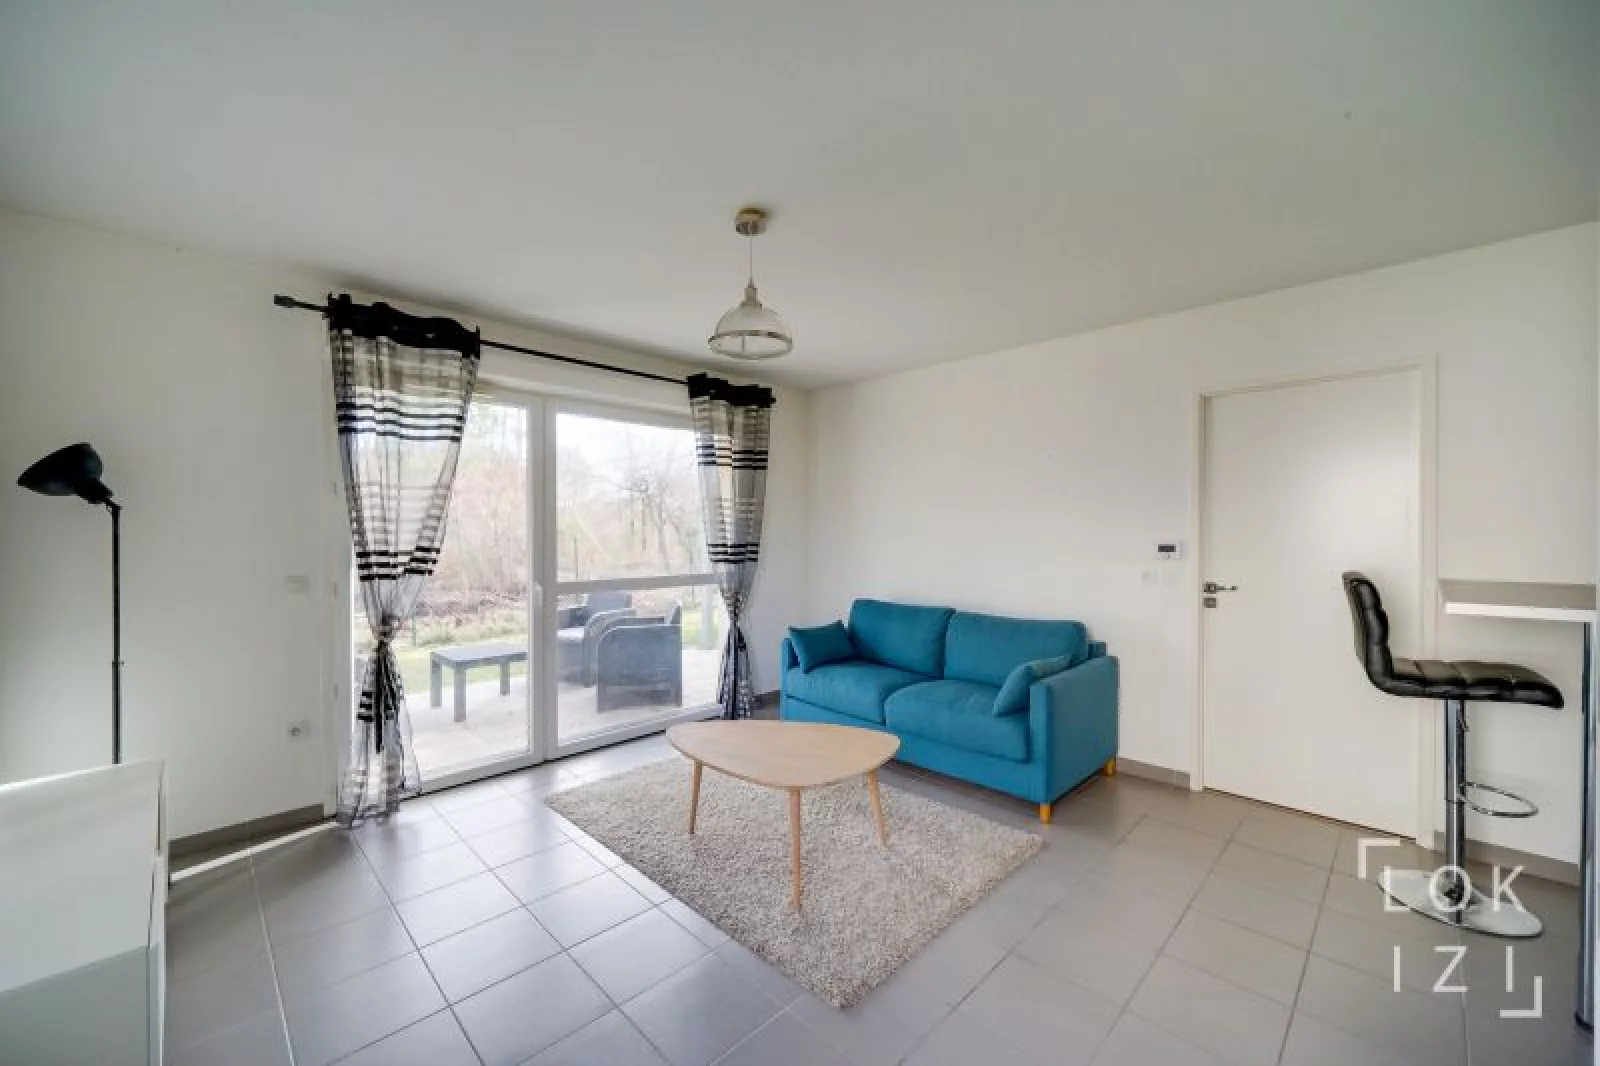 Location appartement meublé 2 pièces 41m² (Bordeaux - Mérignac)